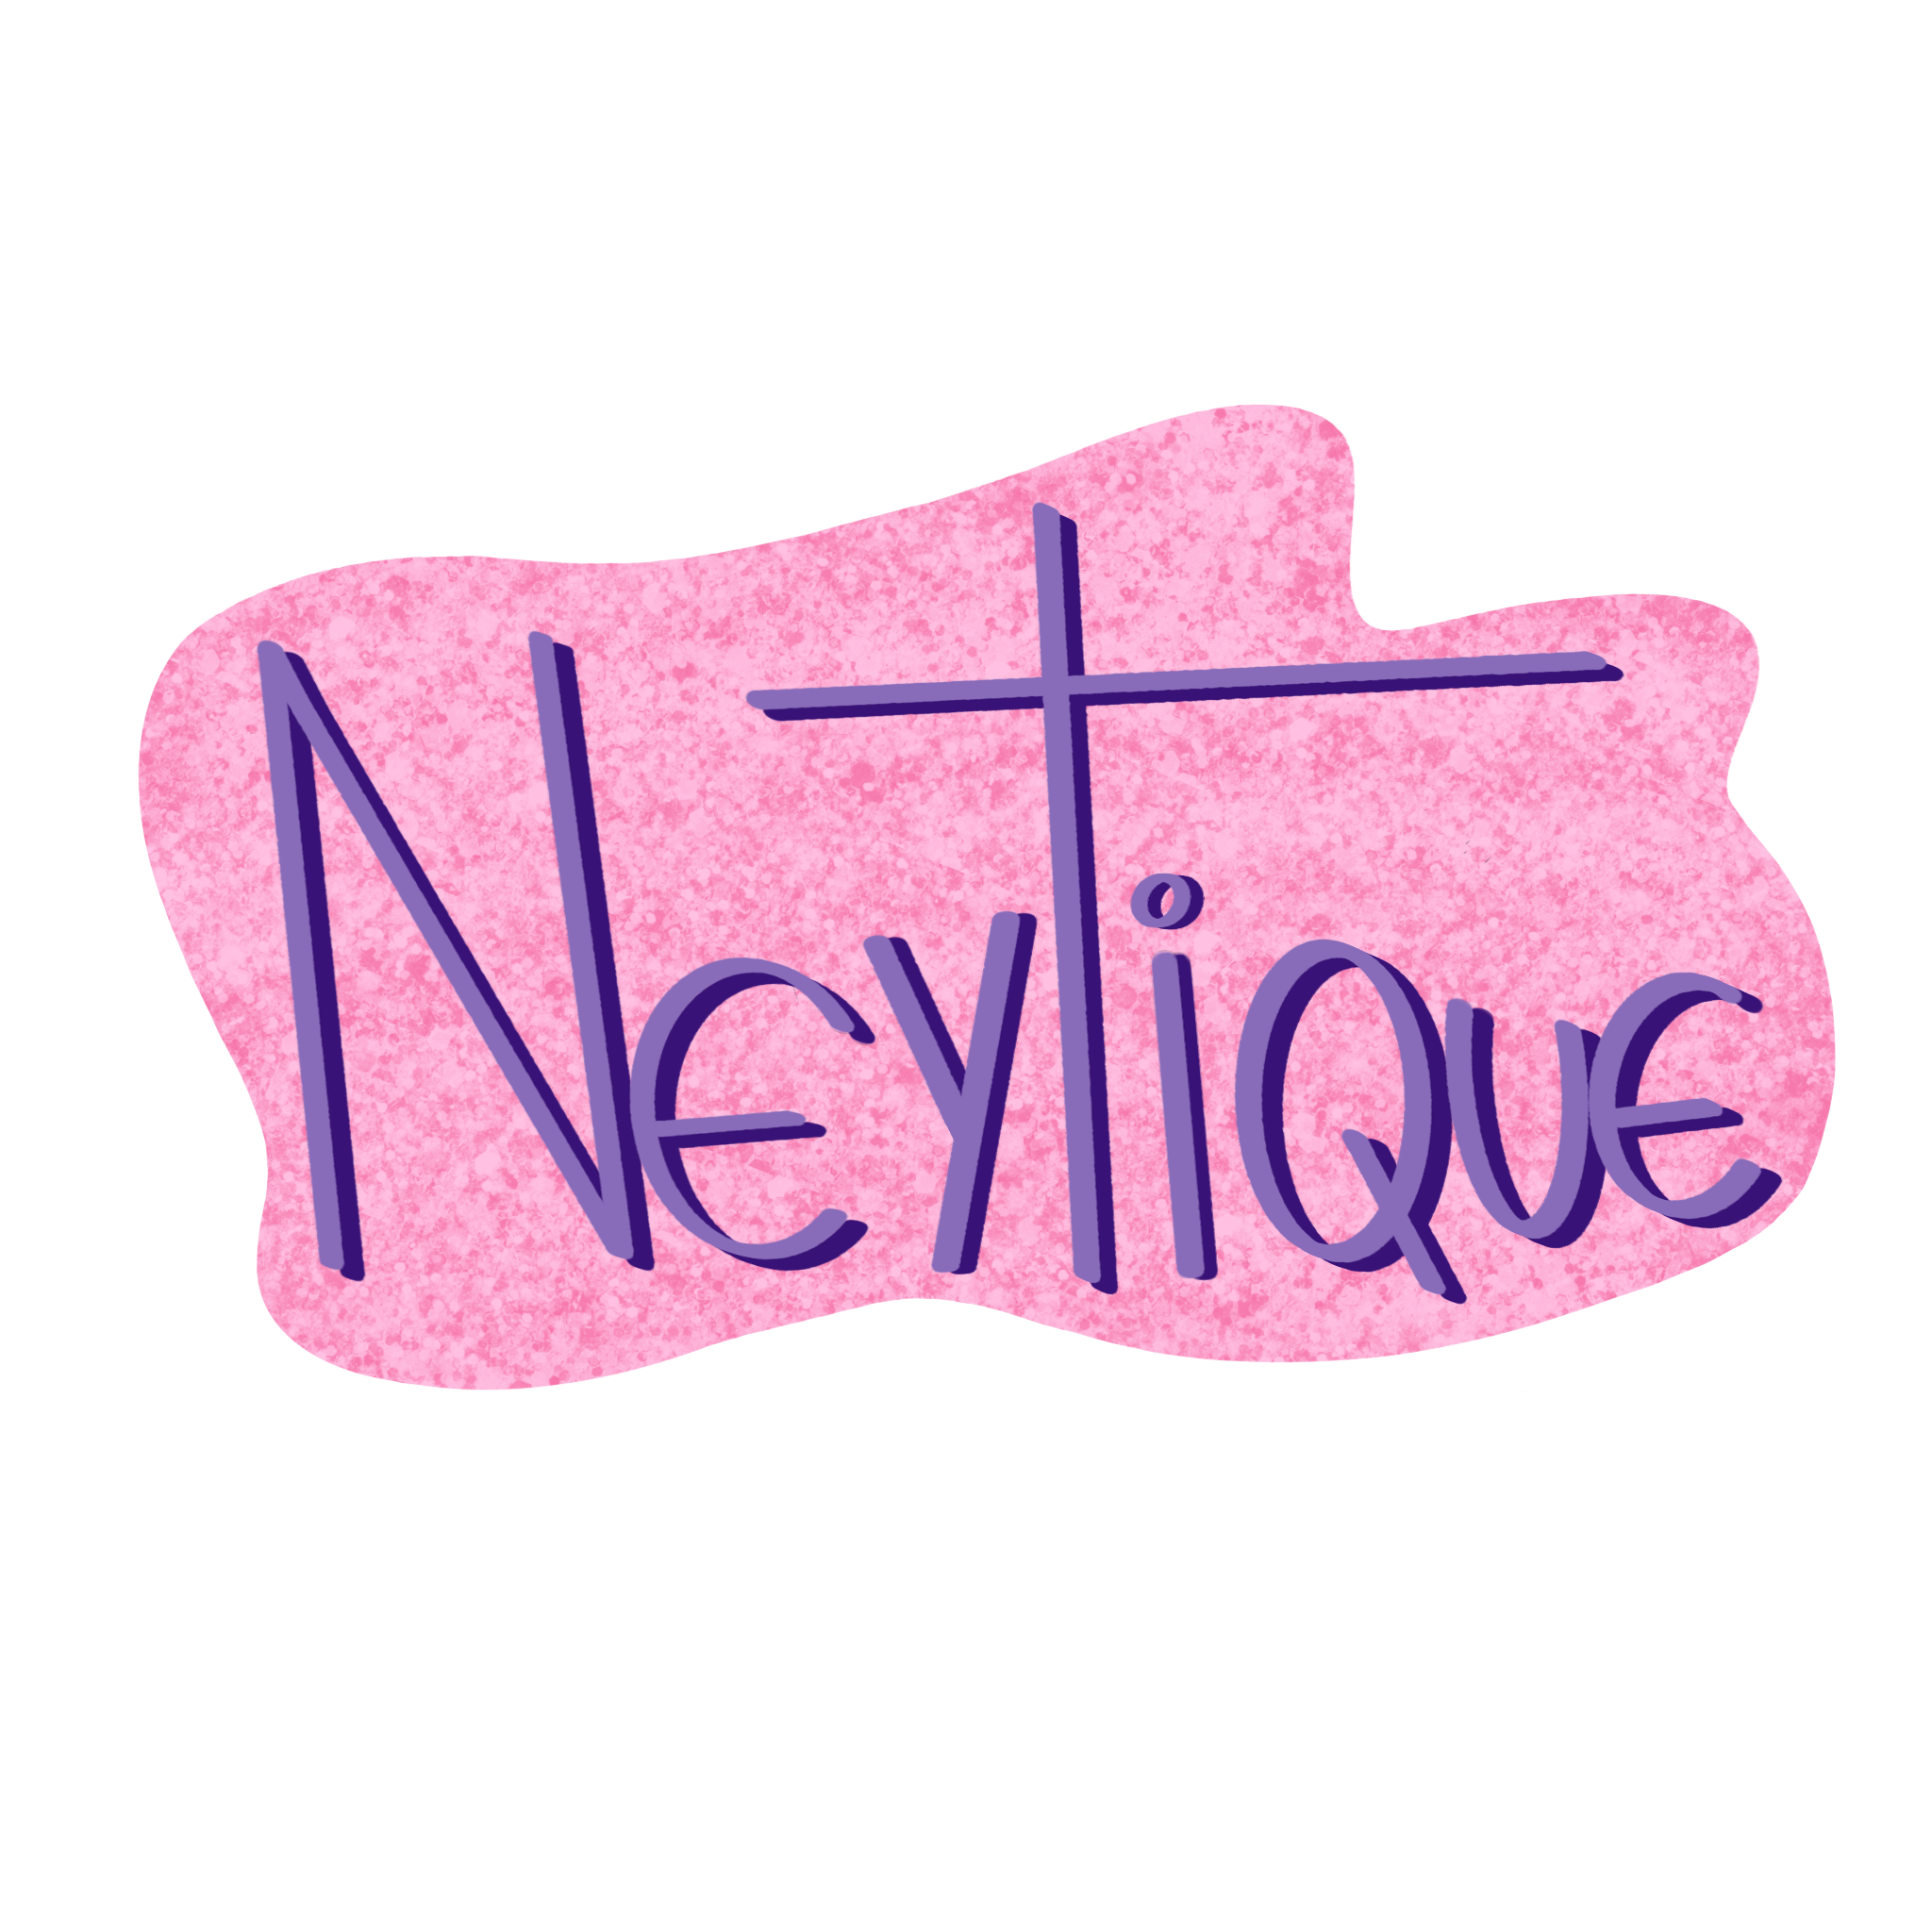 Neytique